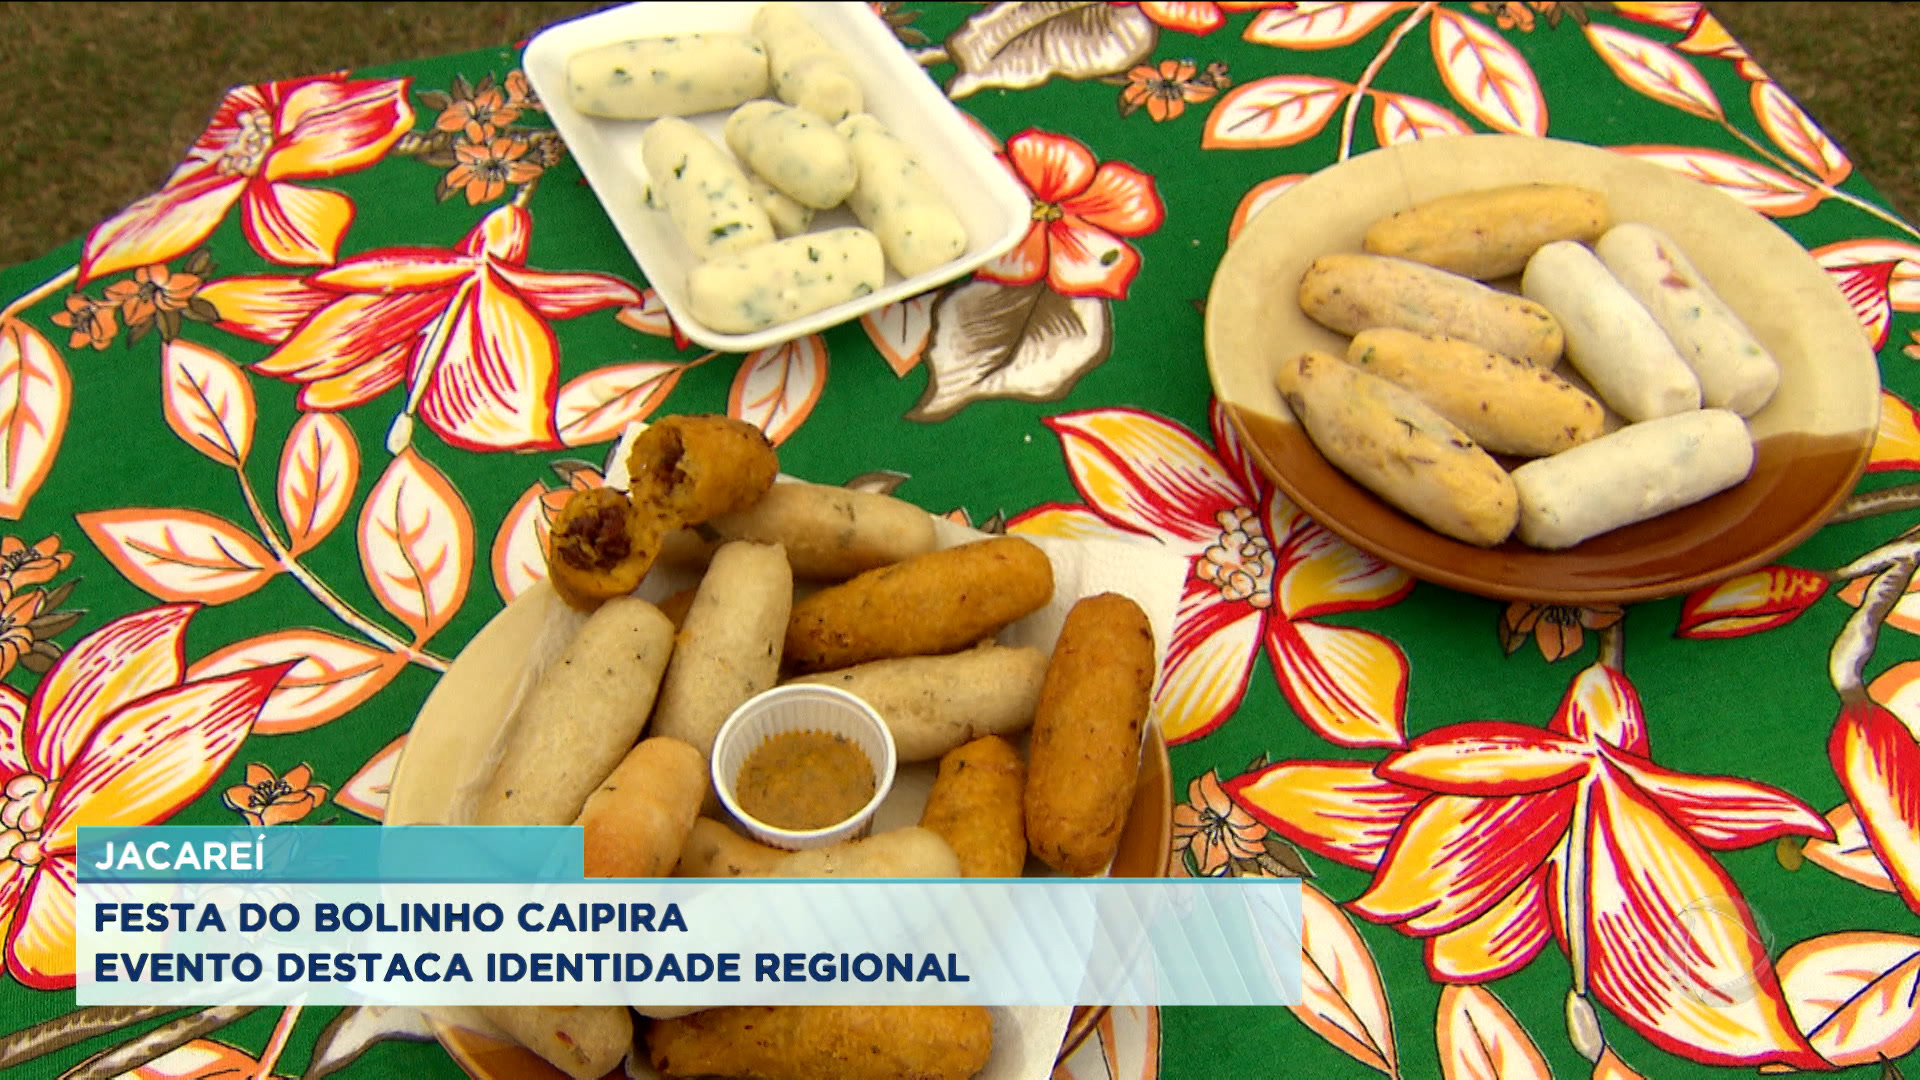 Vídeo: Festa do Bolinho Caipira em Jacareí